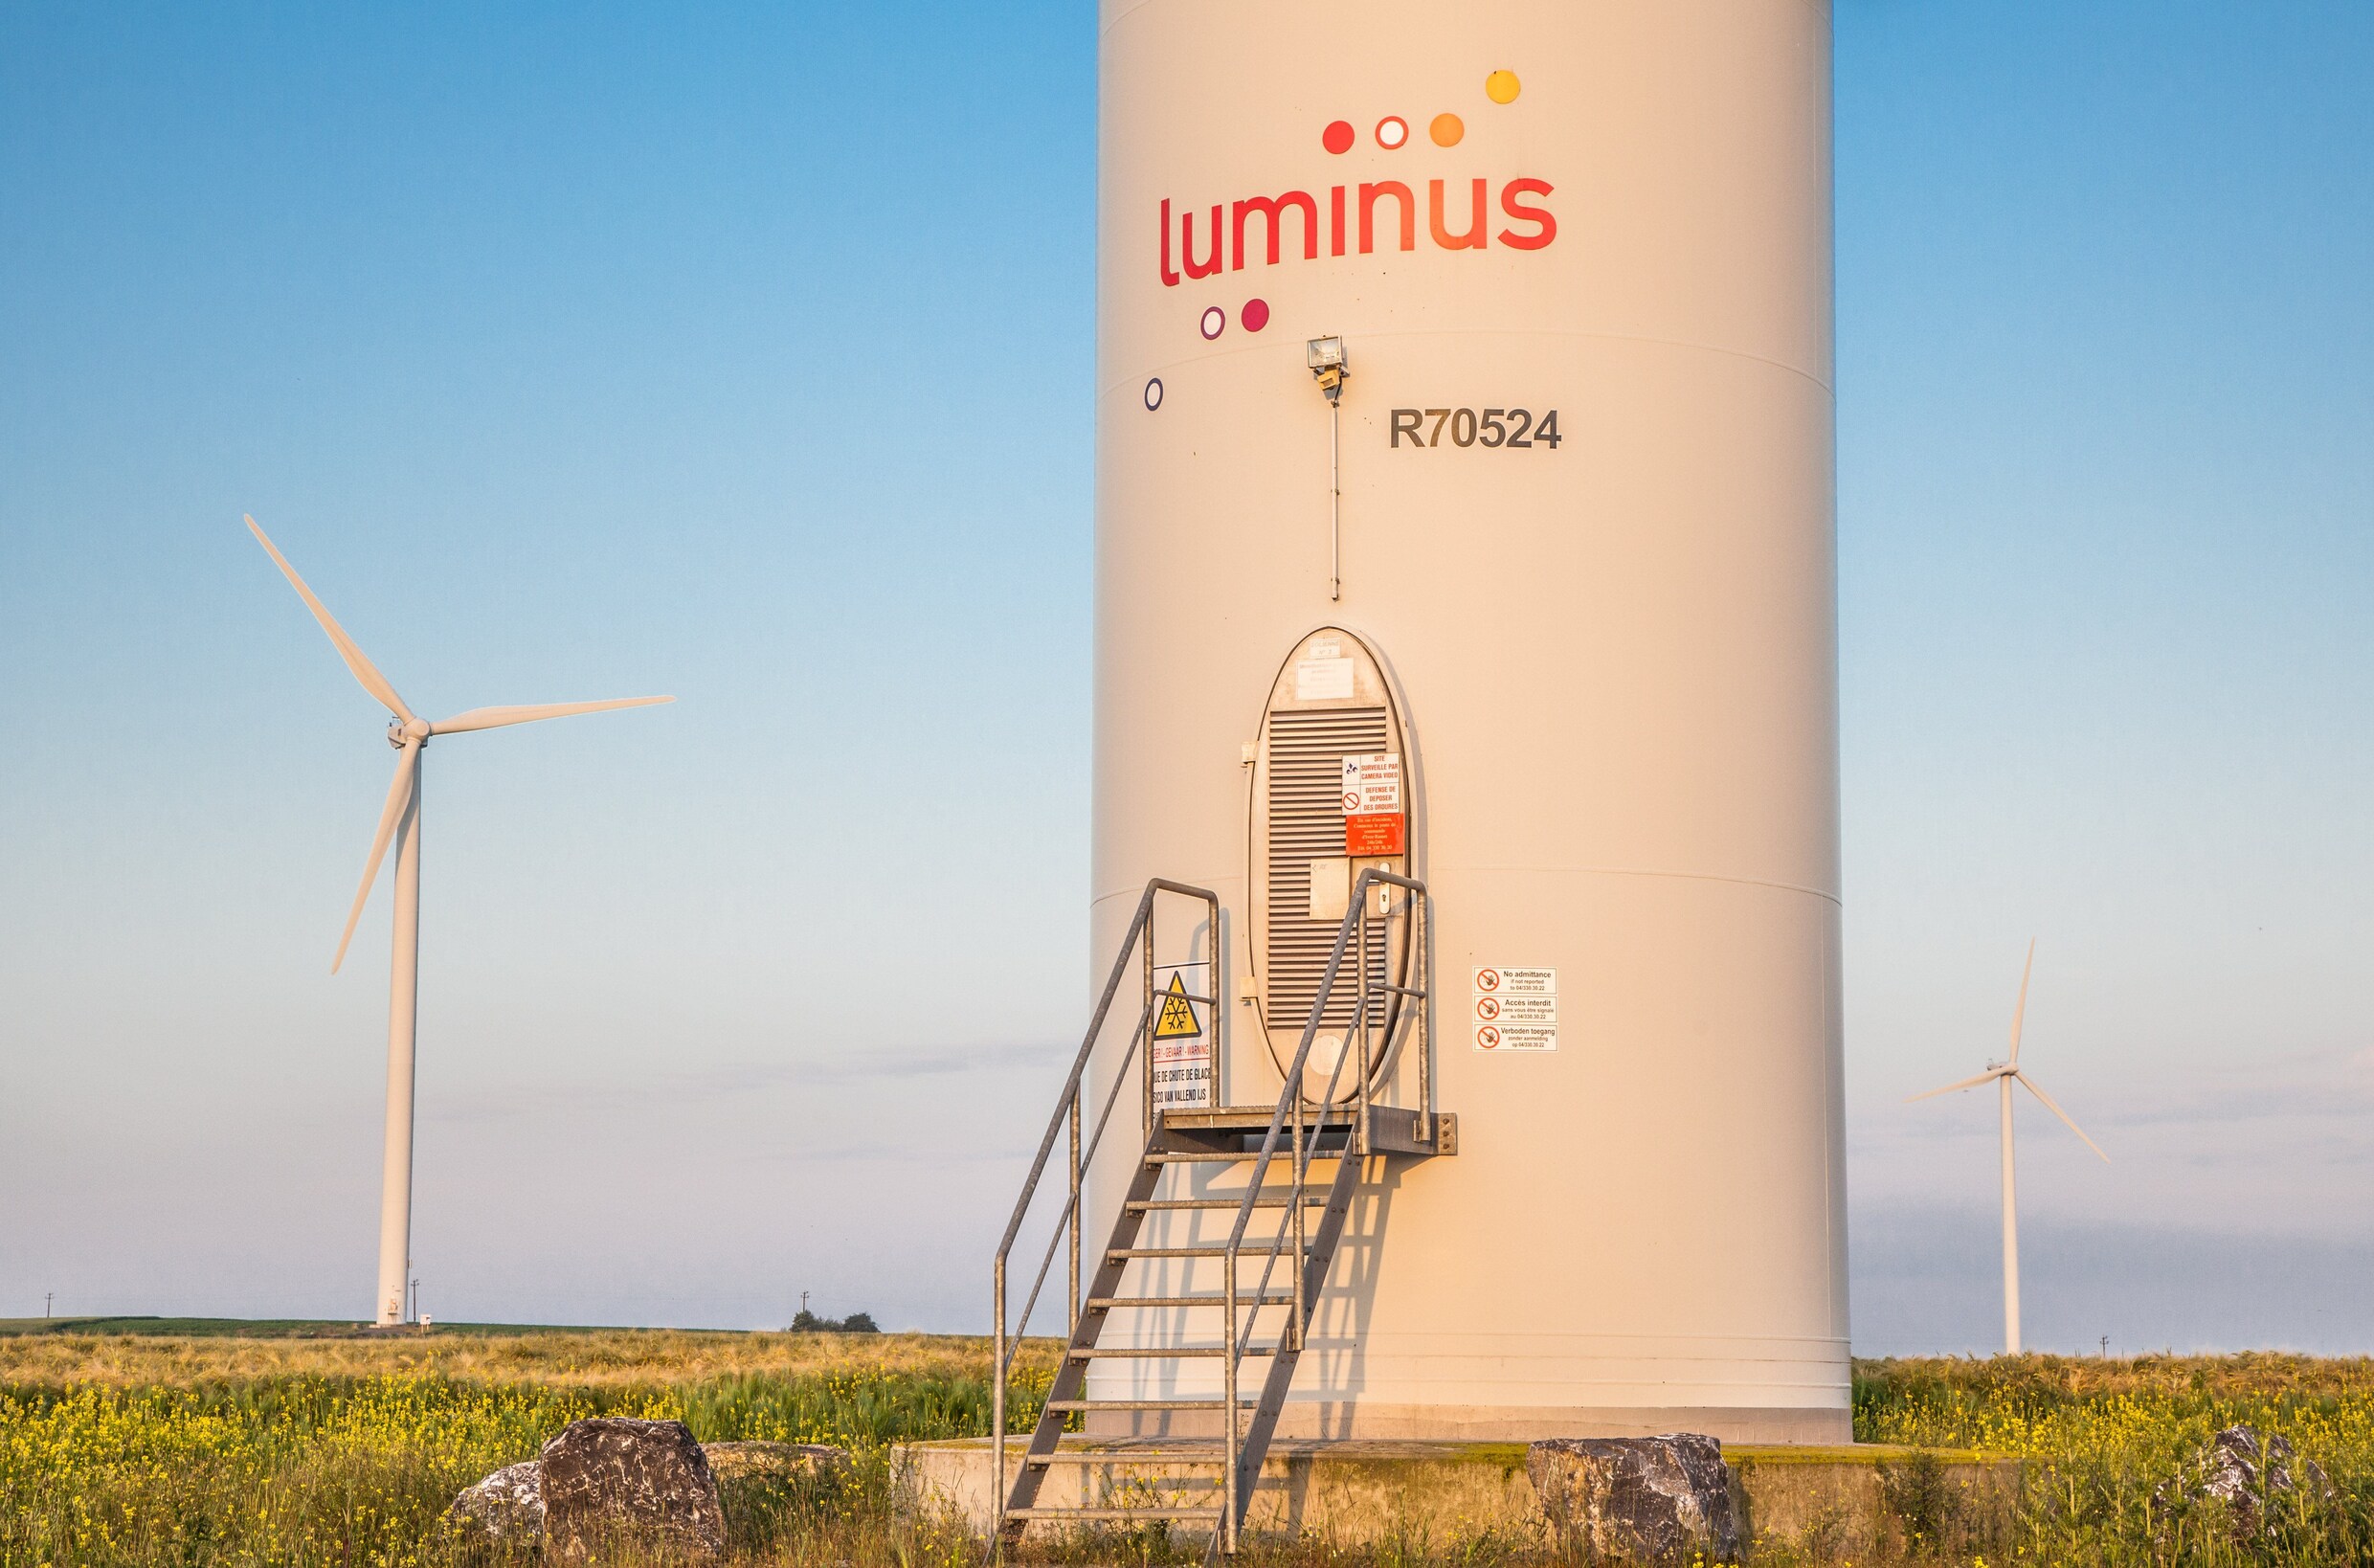 Luminus investeert 700 miljoen euro in groene plannen: vooral extra windturbines op land